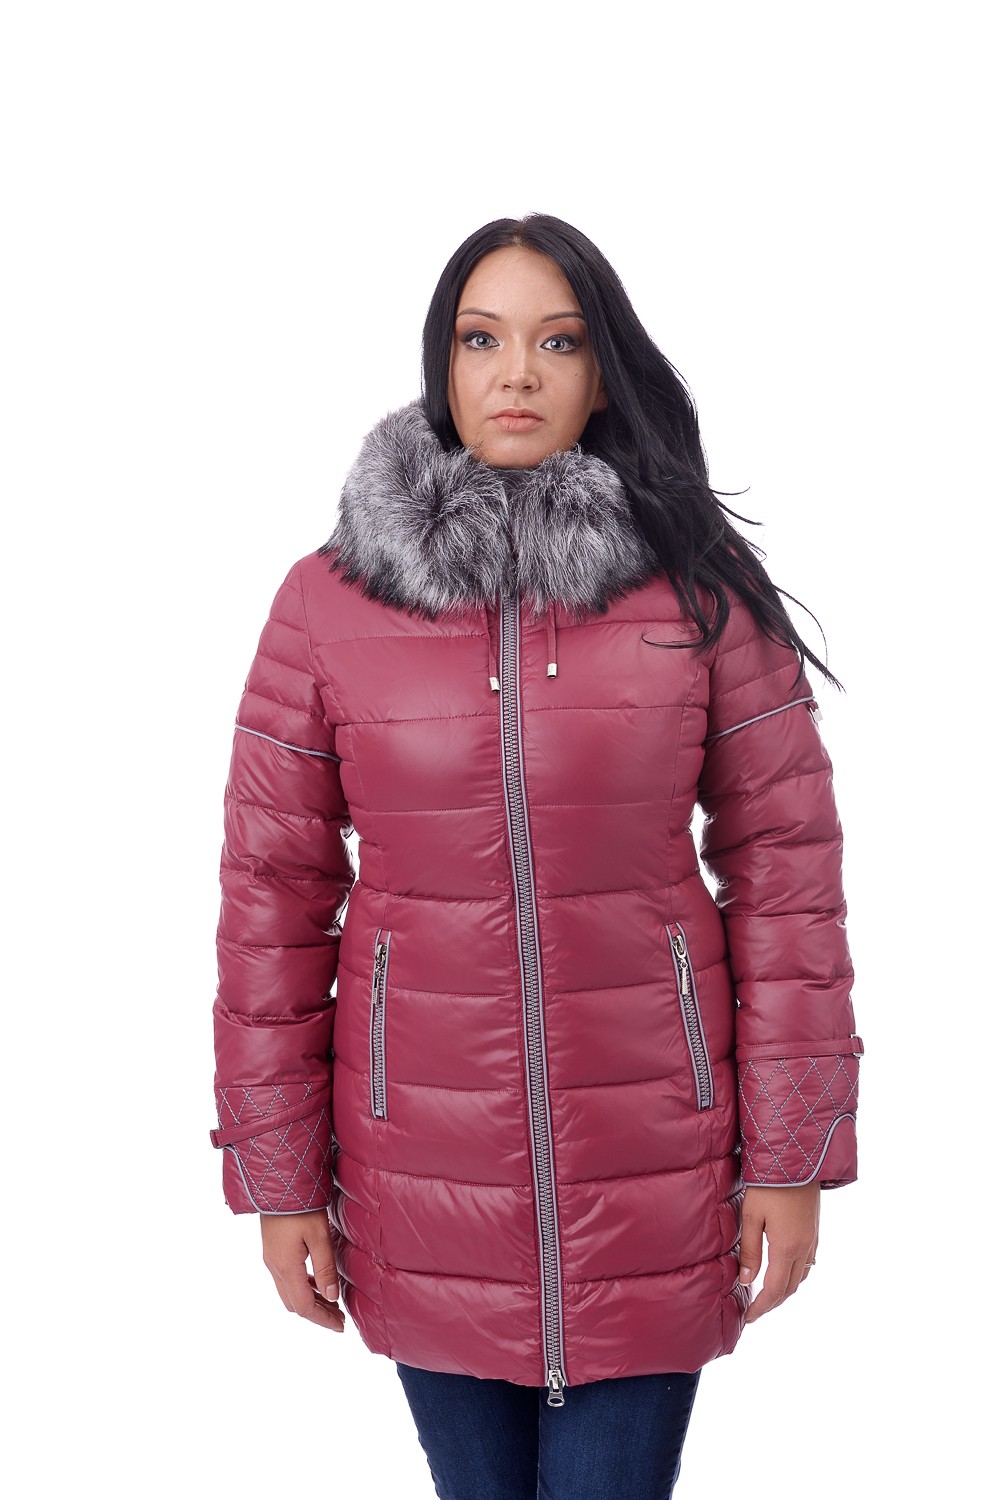 Зимние куртки женские распродажа